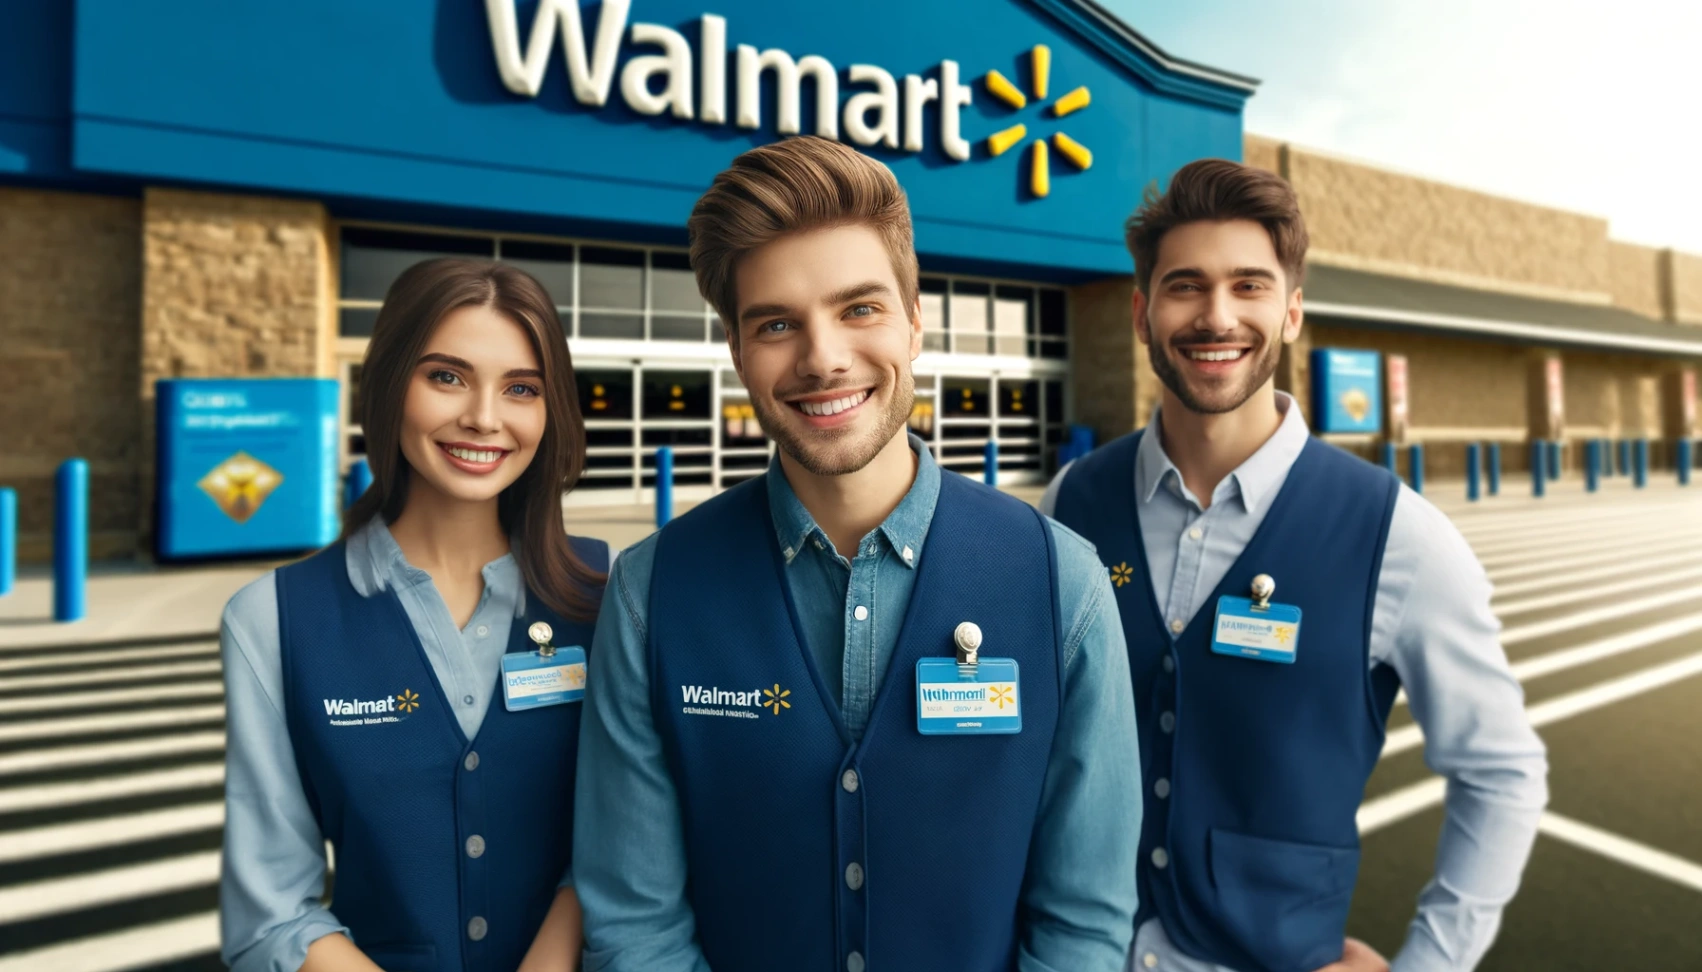 Walmart - Apprenez comment postuler pour des emplois